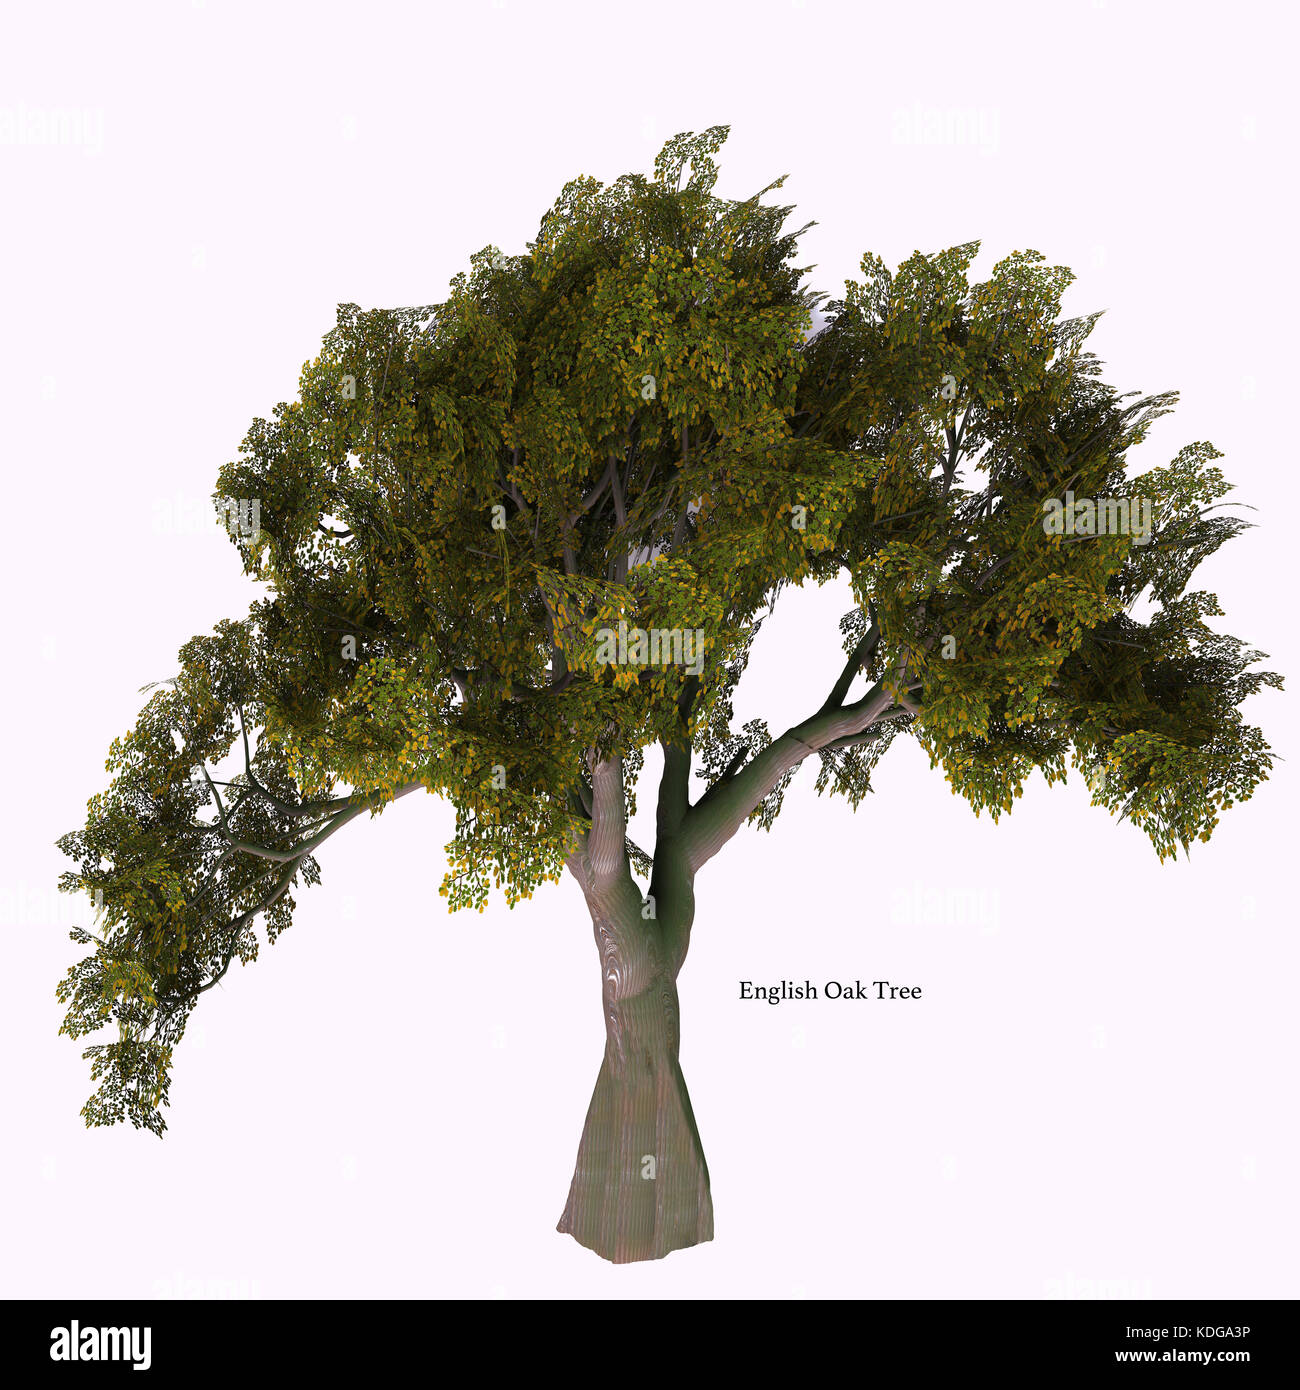 Englisch Oak Tree mit Font-die Eiche kommt in 600 verschiedenen Arten als Laub- oder immergrüne Vielfalt und entwickelt einen acorn Obst Mutter. Stockfoto